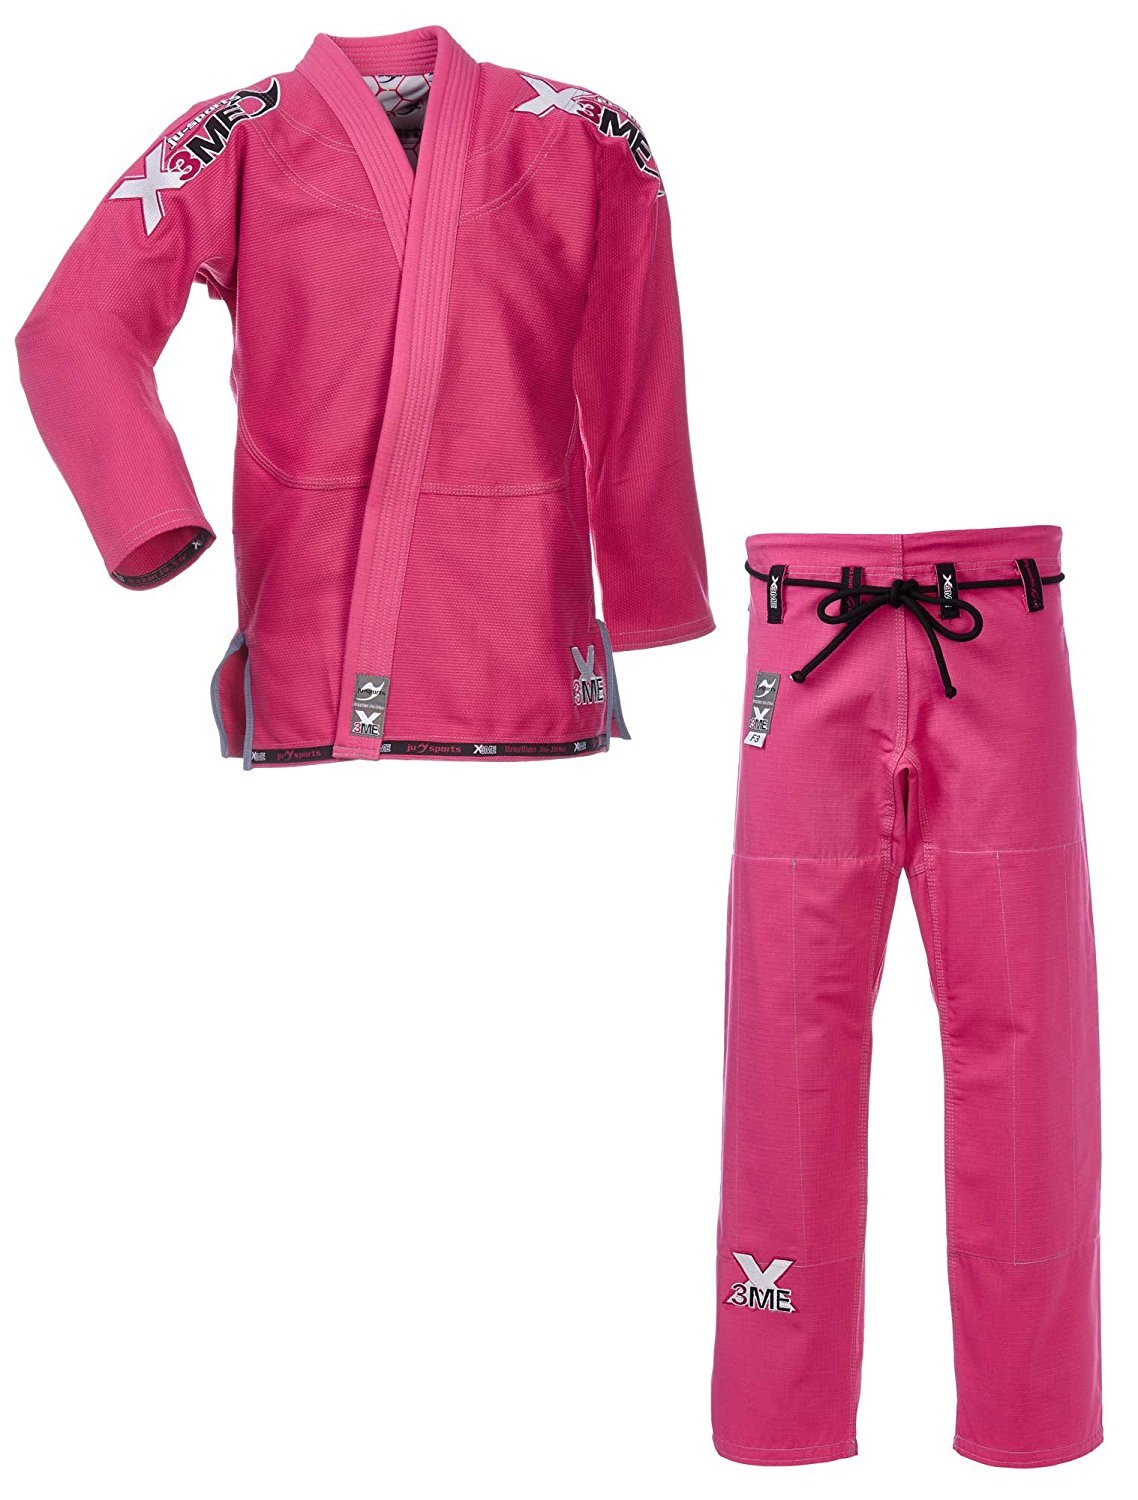 Ju-Sports Amazona BJJ-Gi EXTREME 2.0 Pink F4 I Erstklassiger Brazilian Jujutsu Anzug speziell für Frauen nach Vorgaben der JJIF I Mehrfach vernäht I 100% Baumwolle